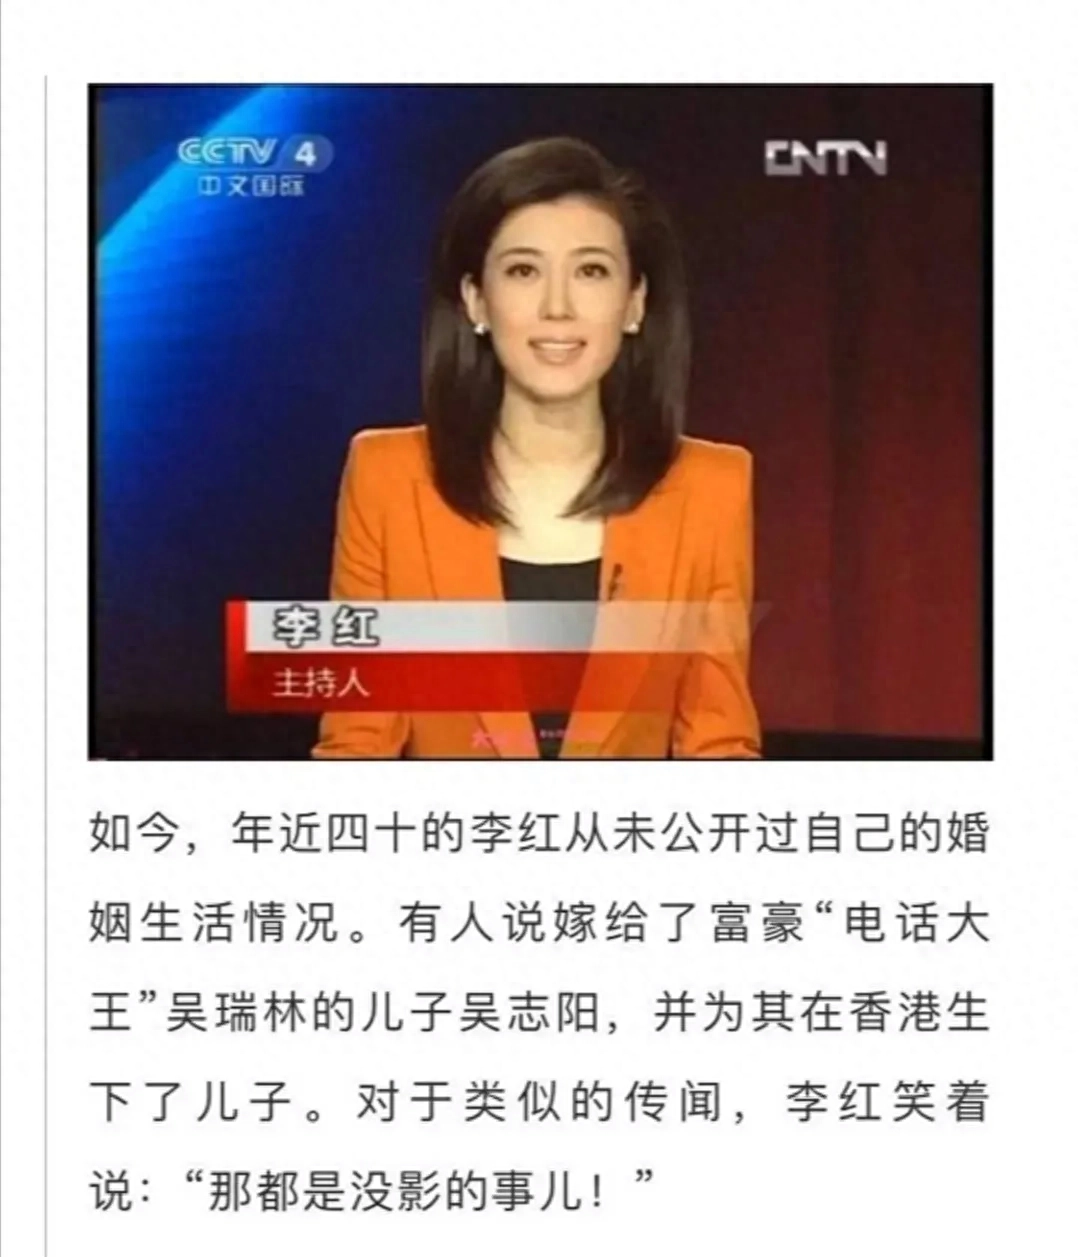 关于央视主持人李红的个人生活状况的辟谣